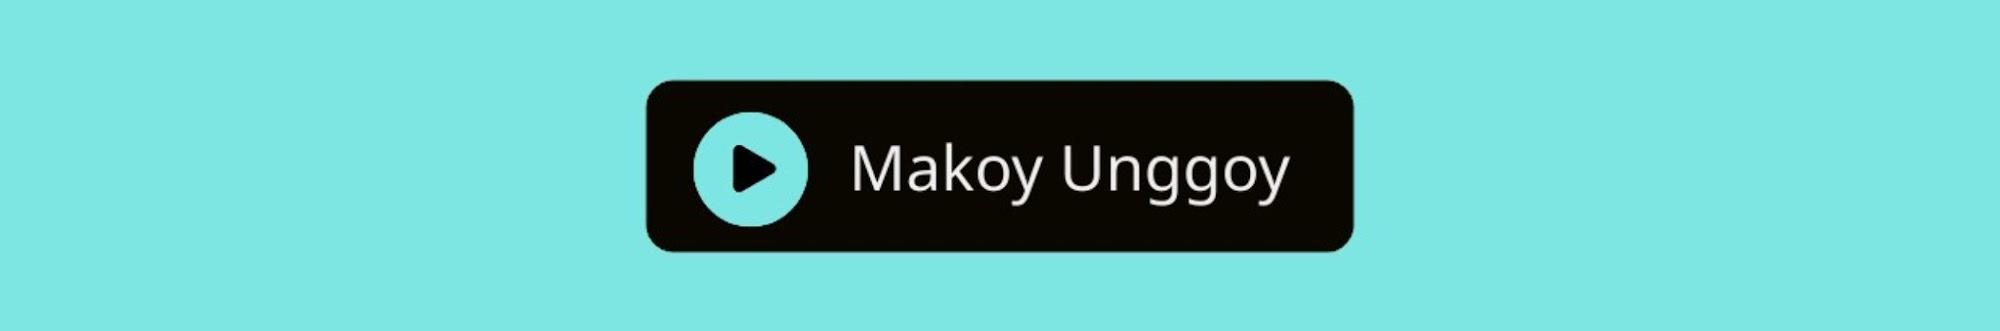 Makoy Unggoy